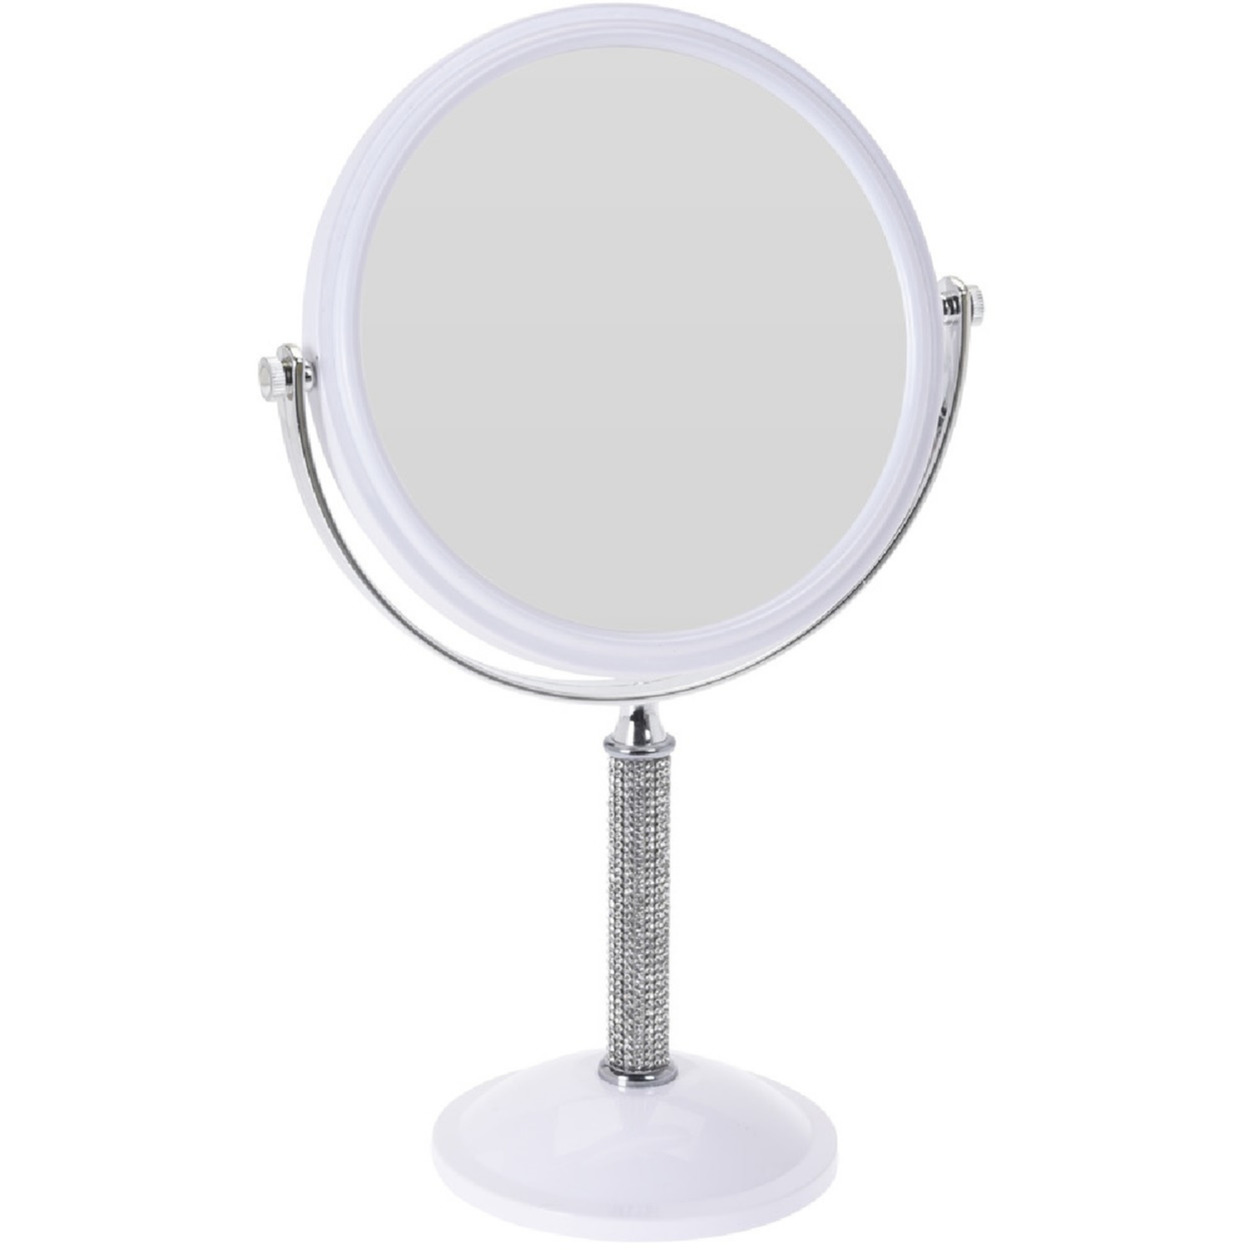 Witte make-up spiegel met strass steentjes rond dubbelzijdig 17,5 x 33 cm